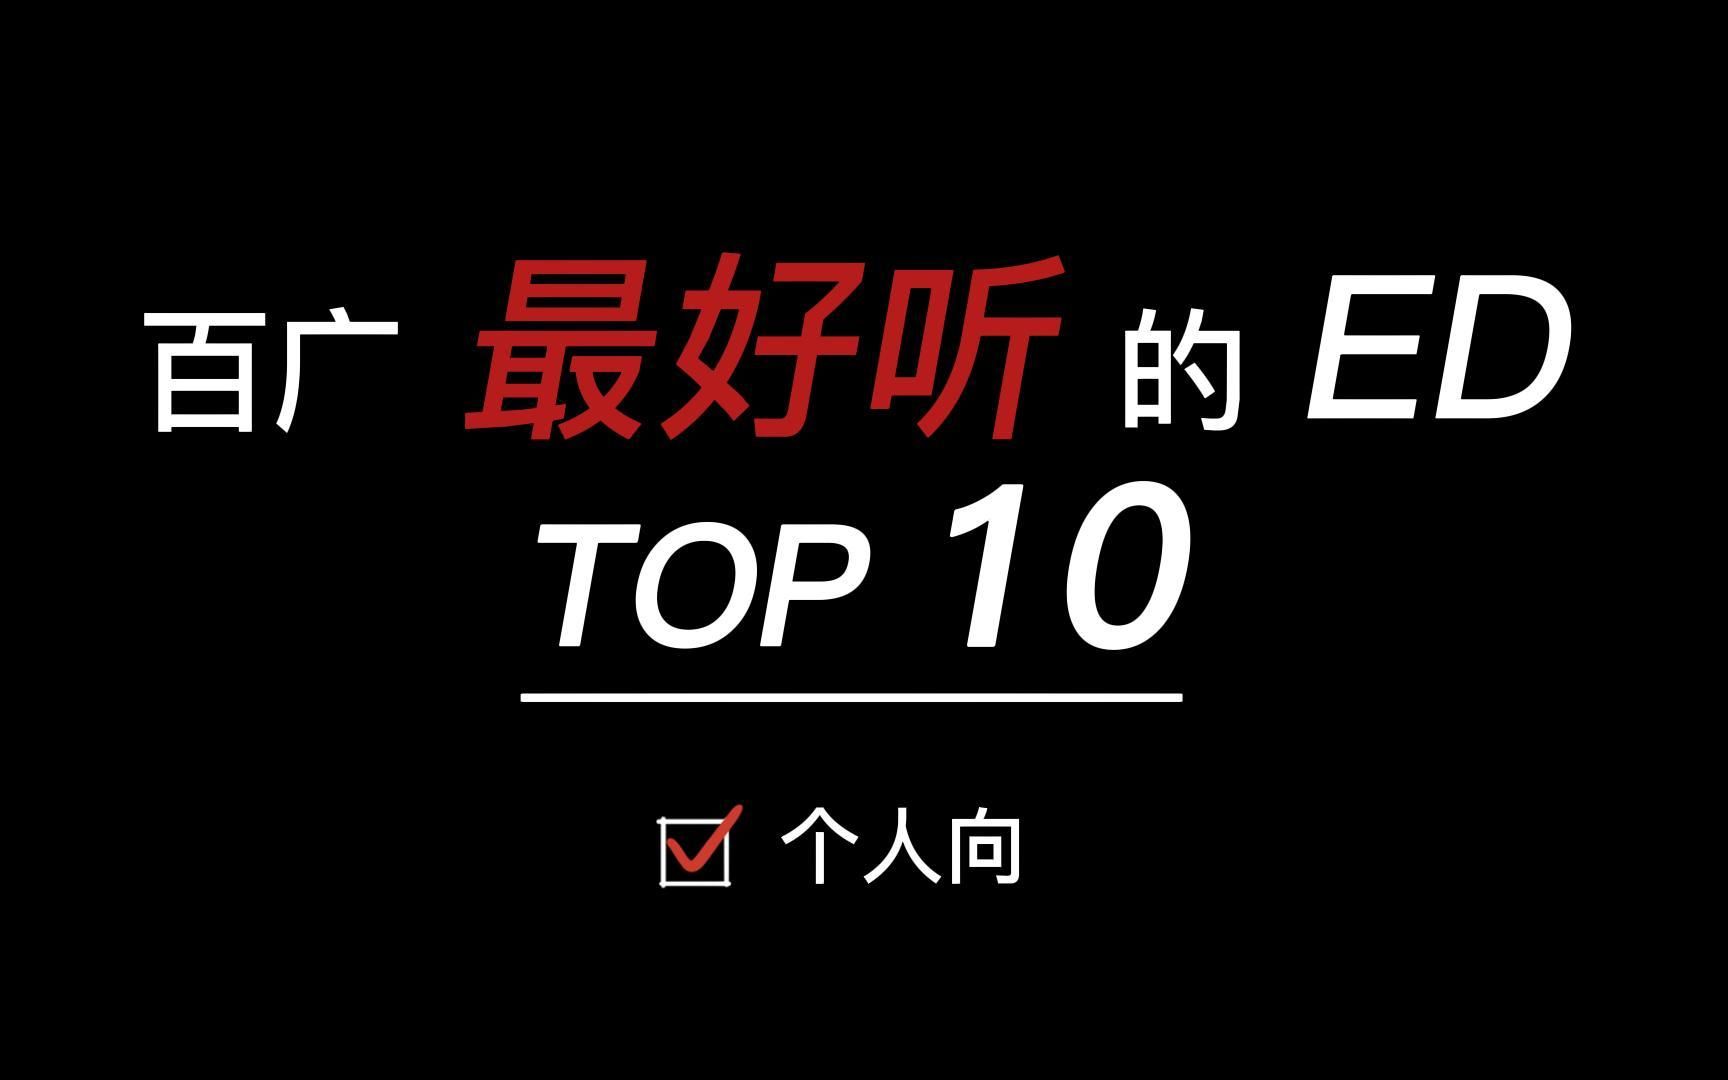 【个人向】百广最好听的ED Top10